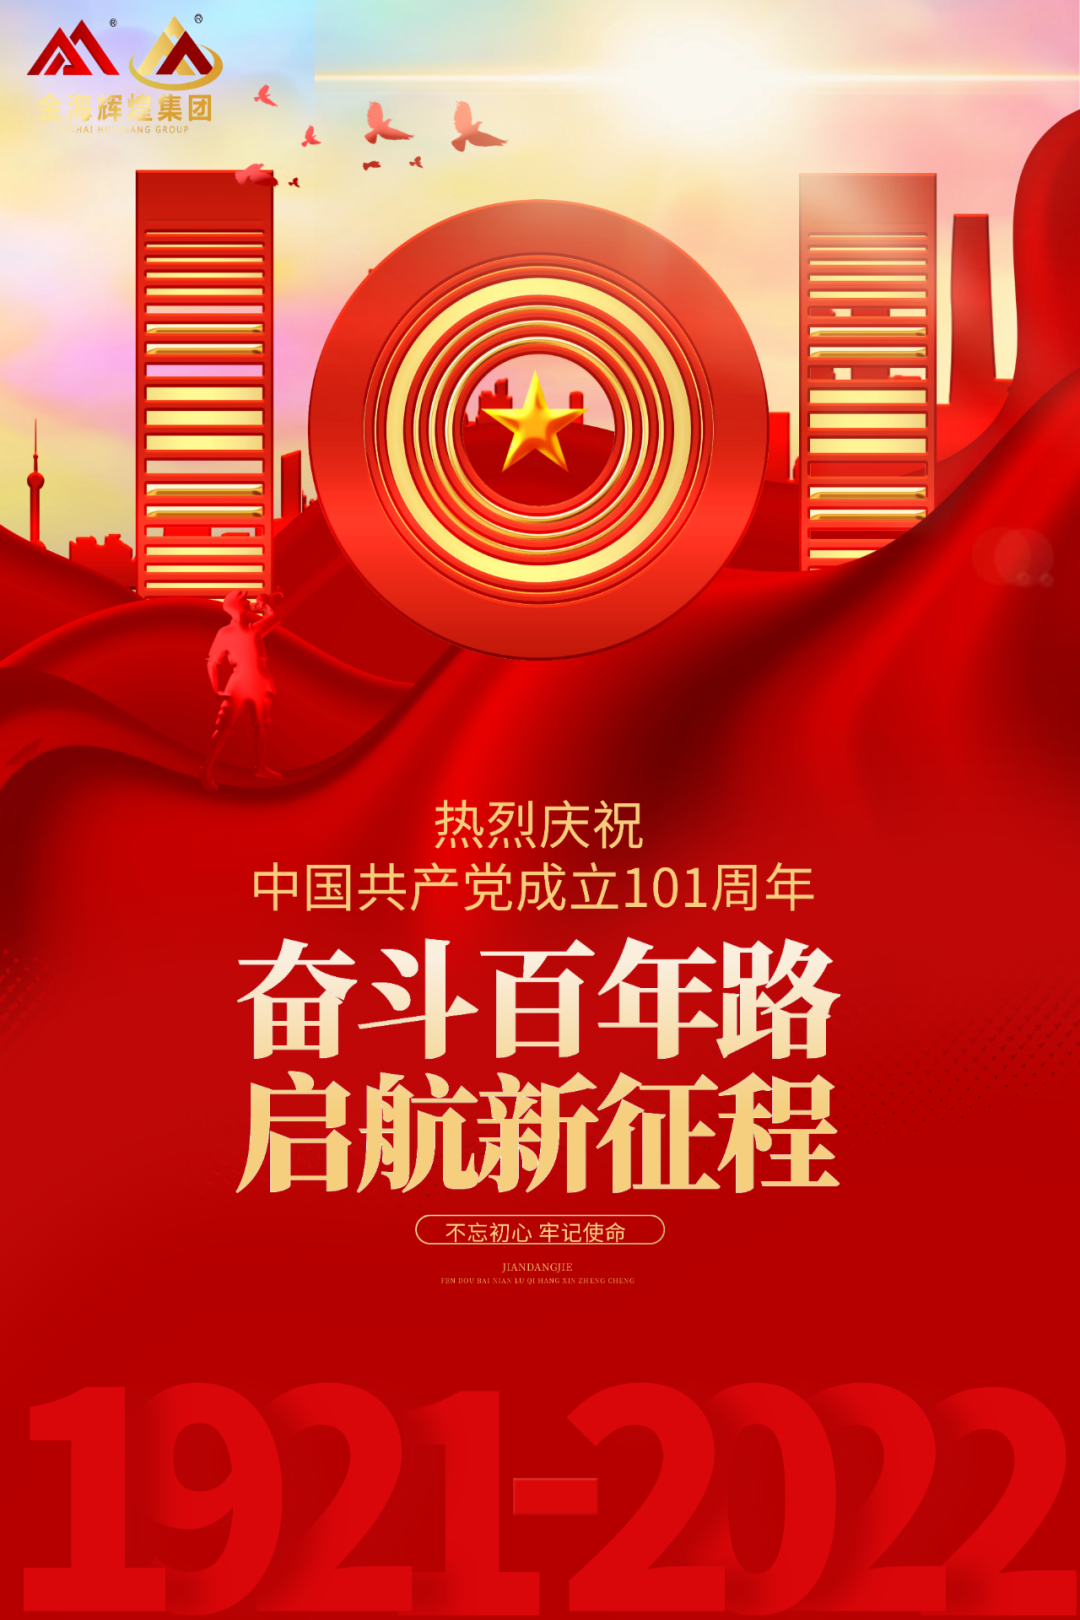 fungaming | 热烈祝贺中国共产党建立101周年！